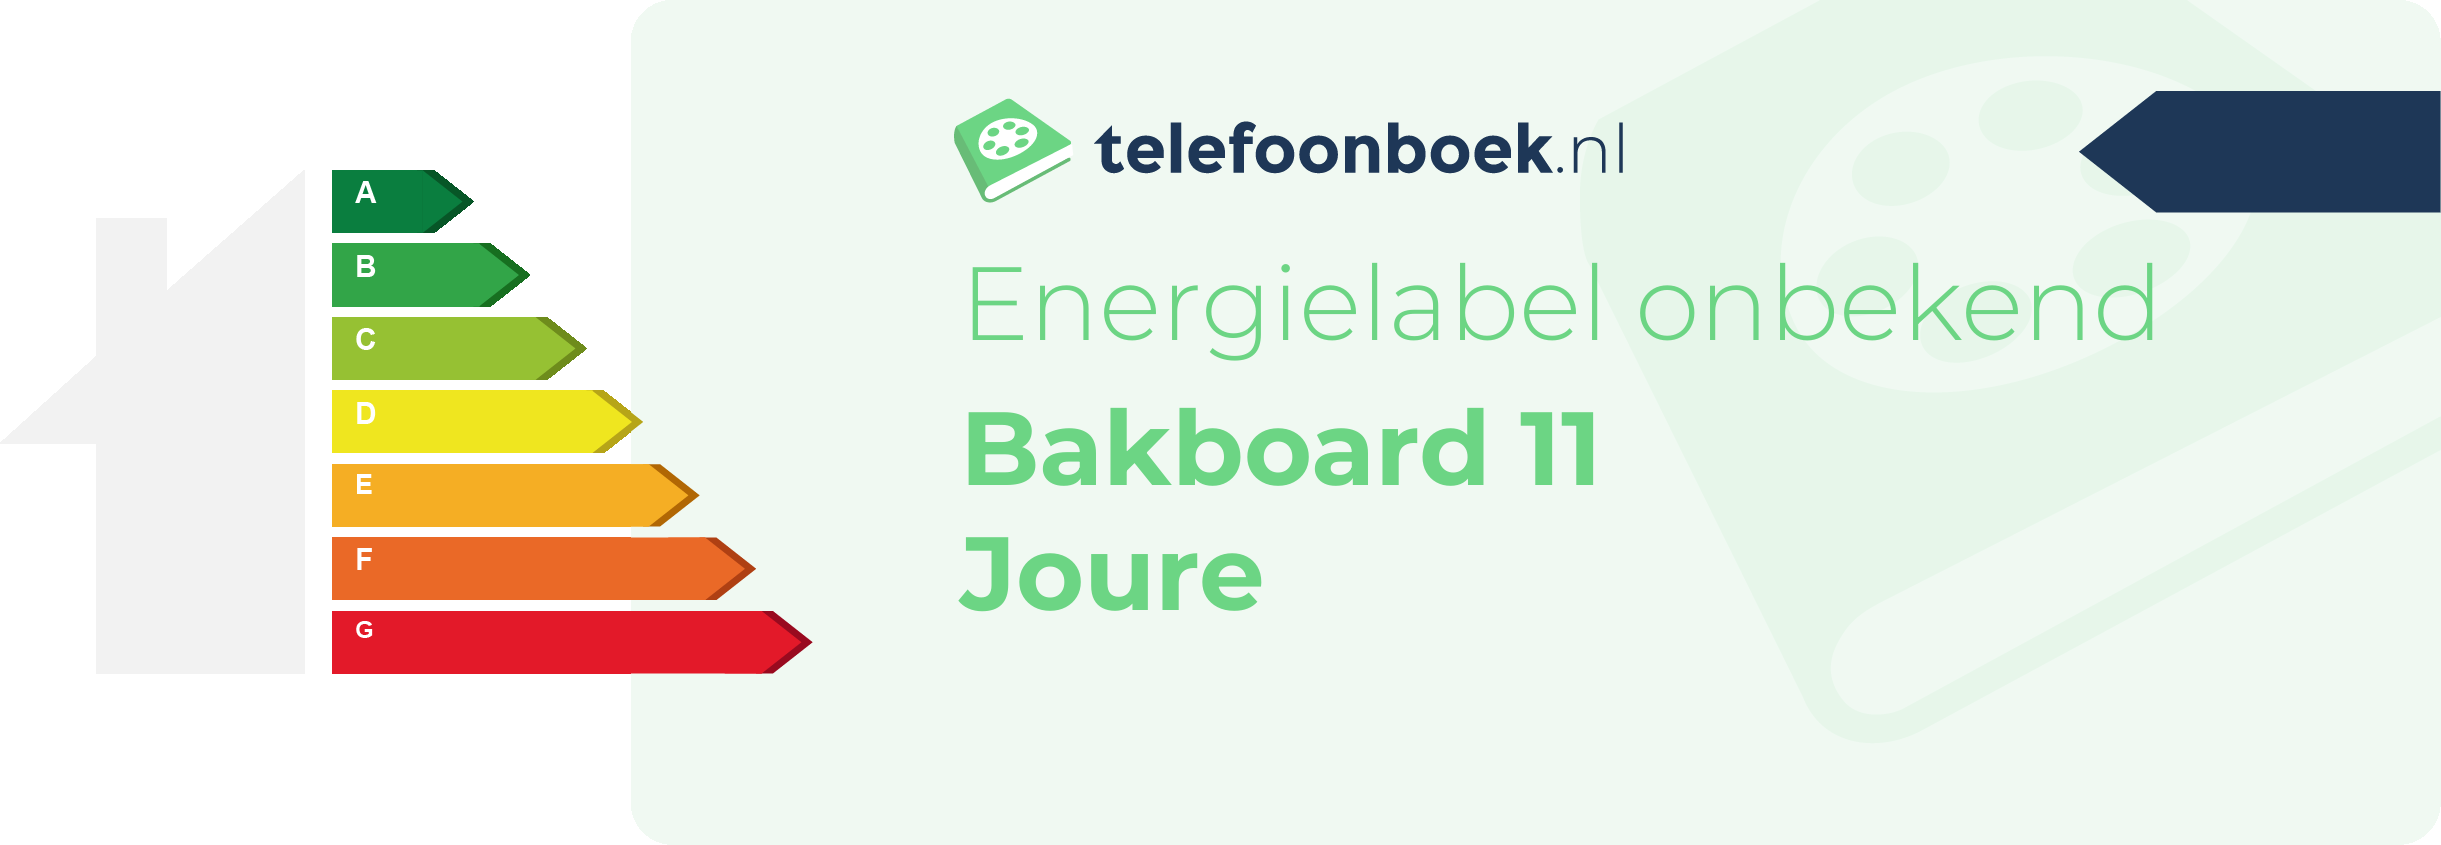 Energielabel Bakboard 11 Joure